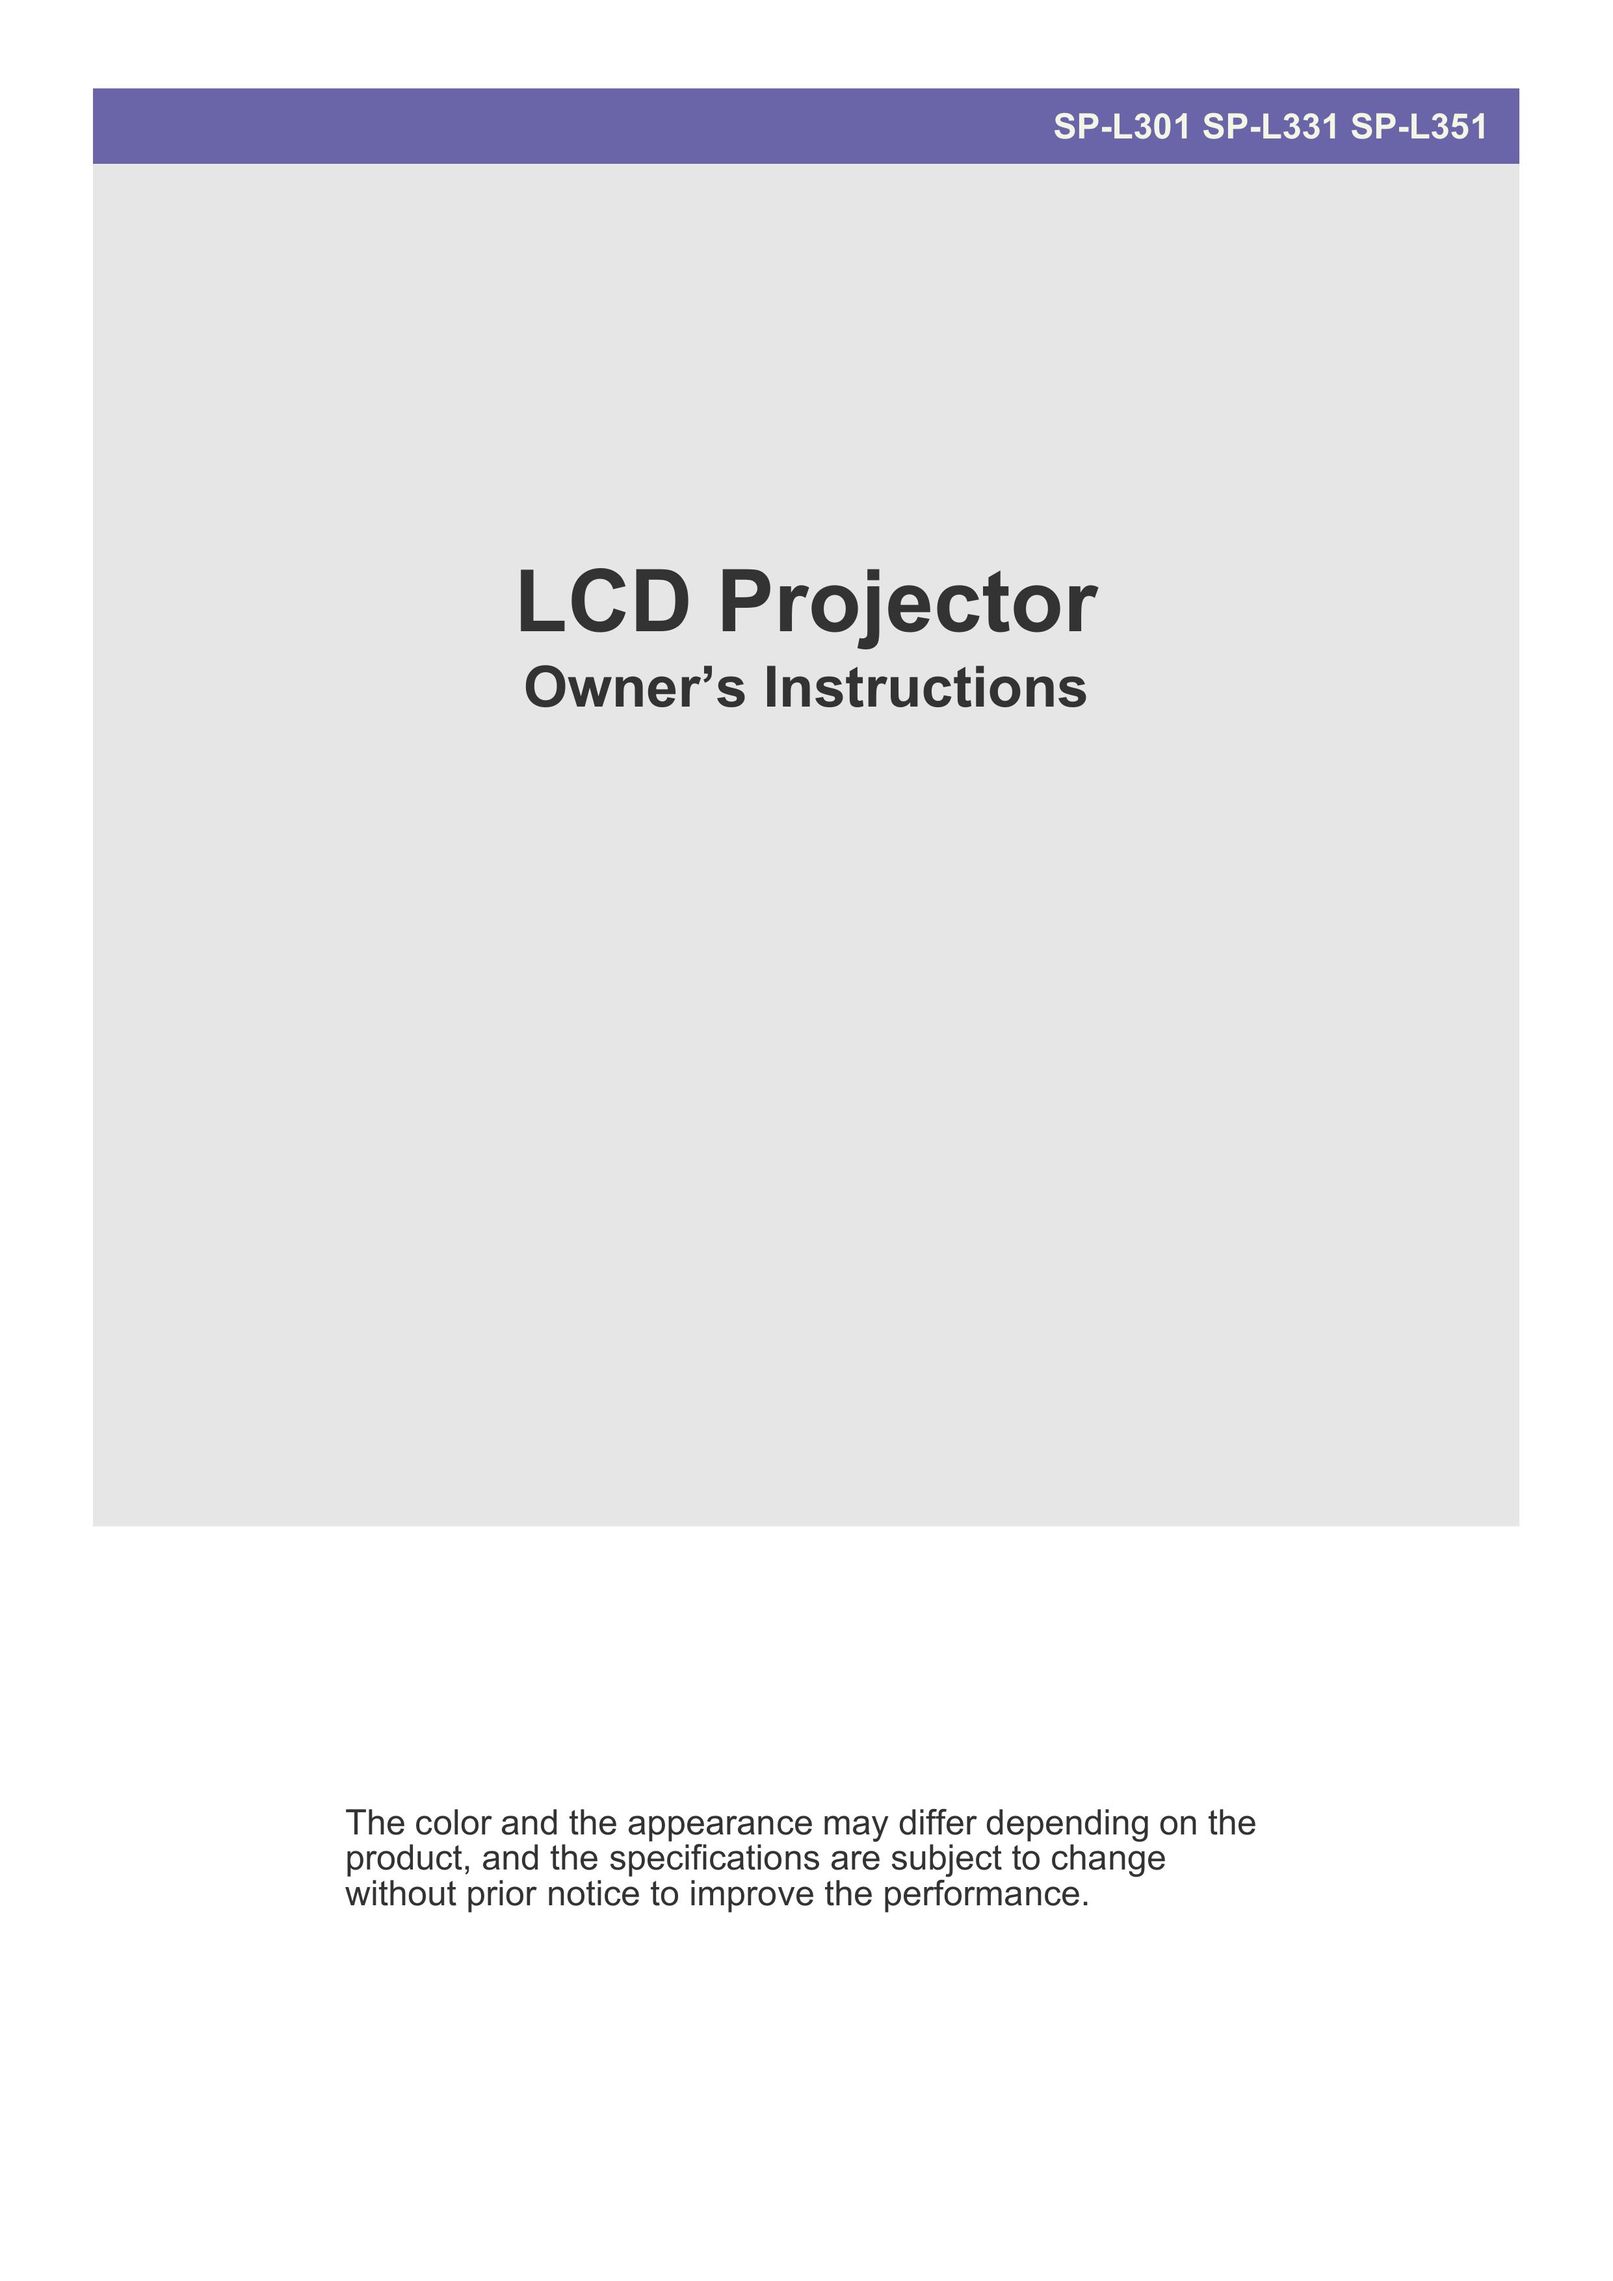 Samsung SP-L331 Projector User Manual